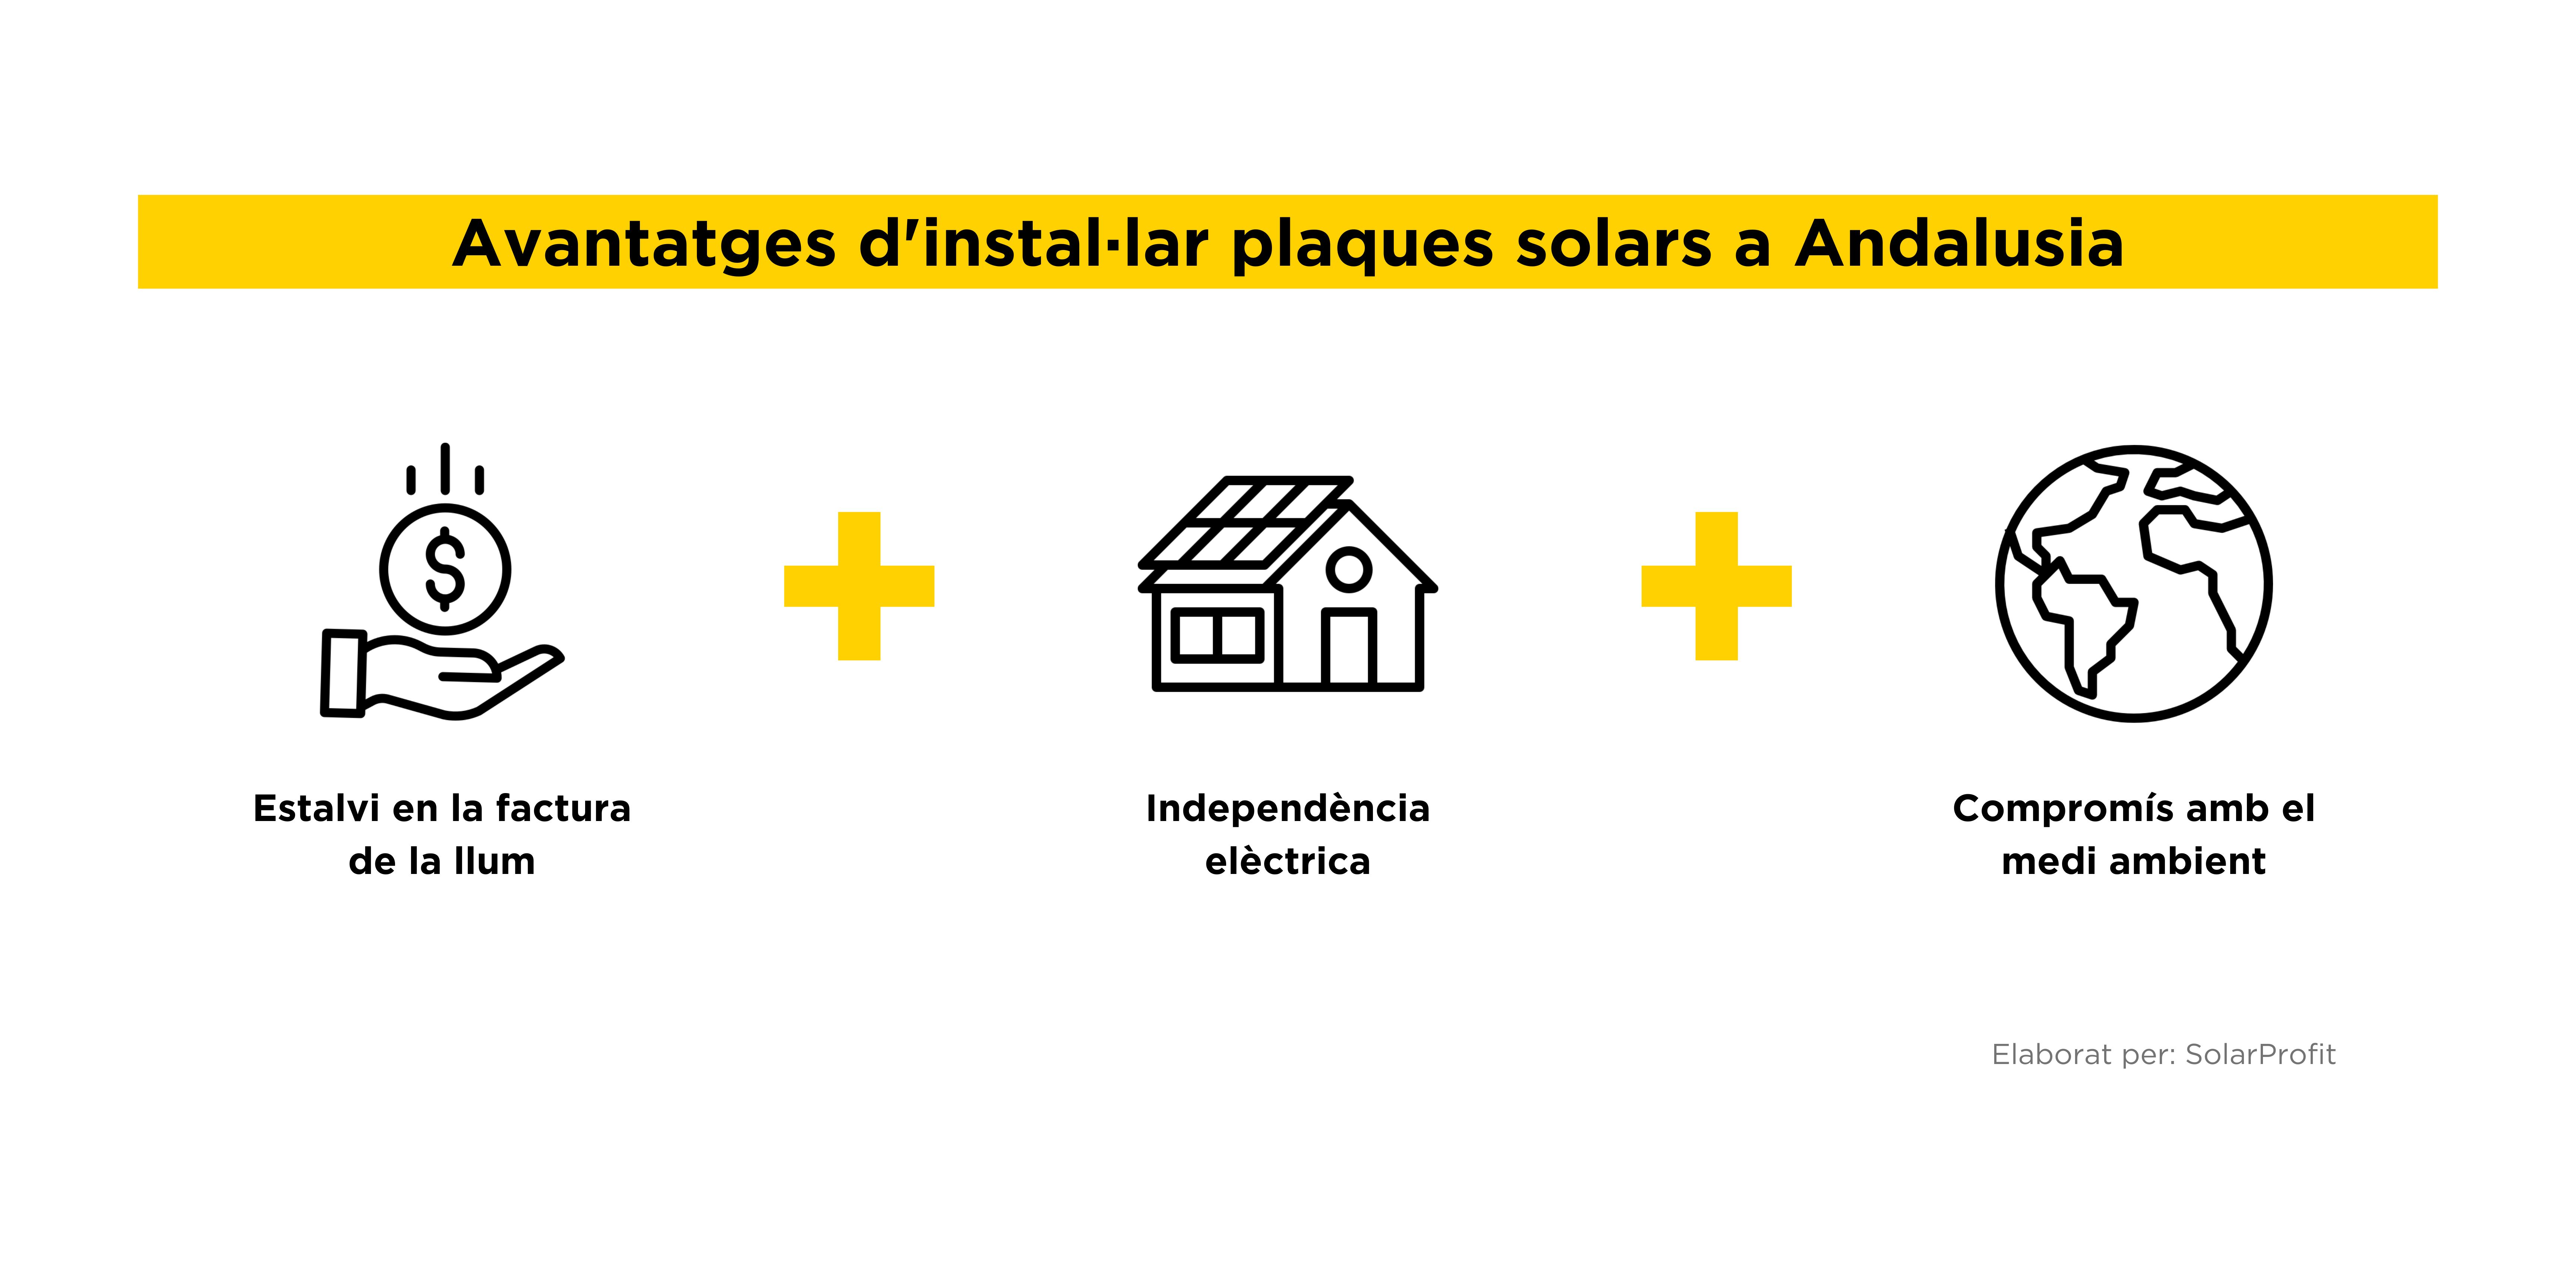 Avantatges plaques solars Andalusia